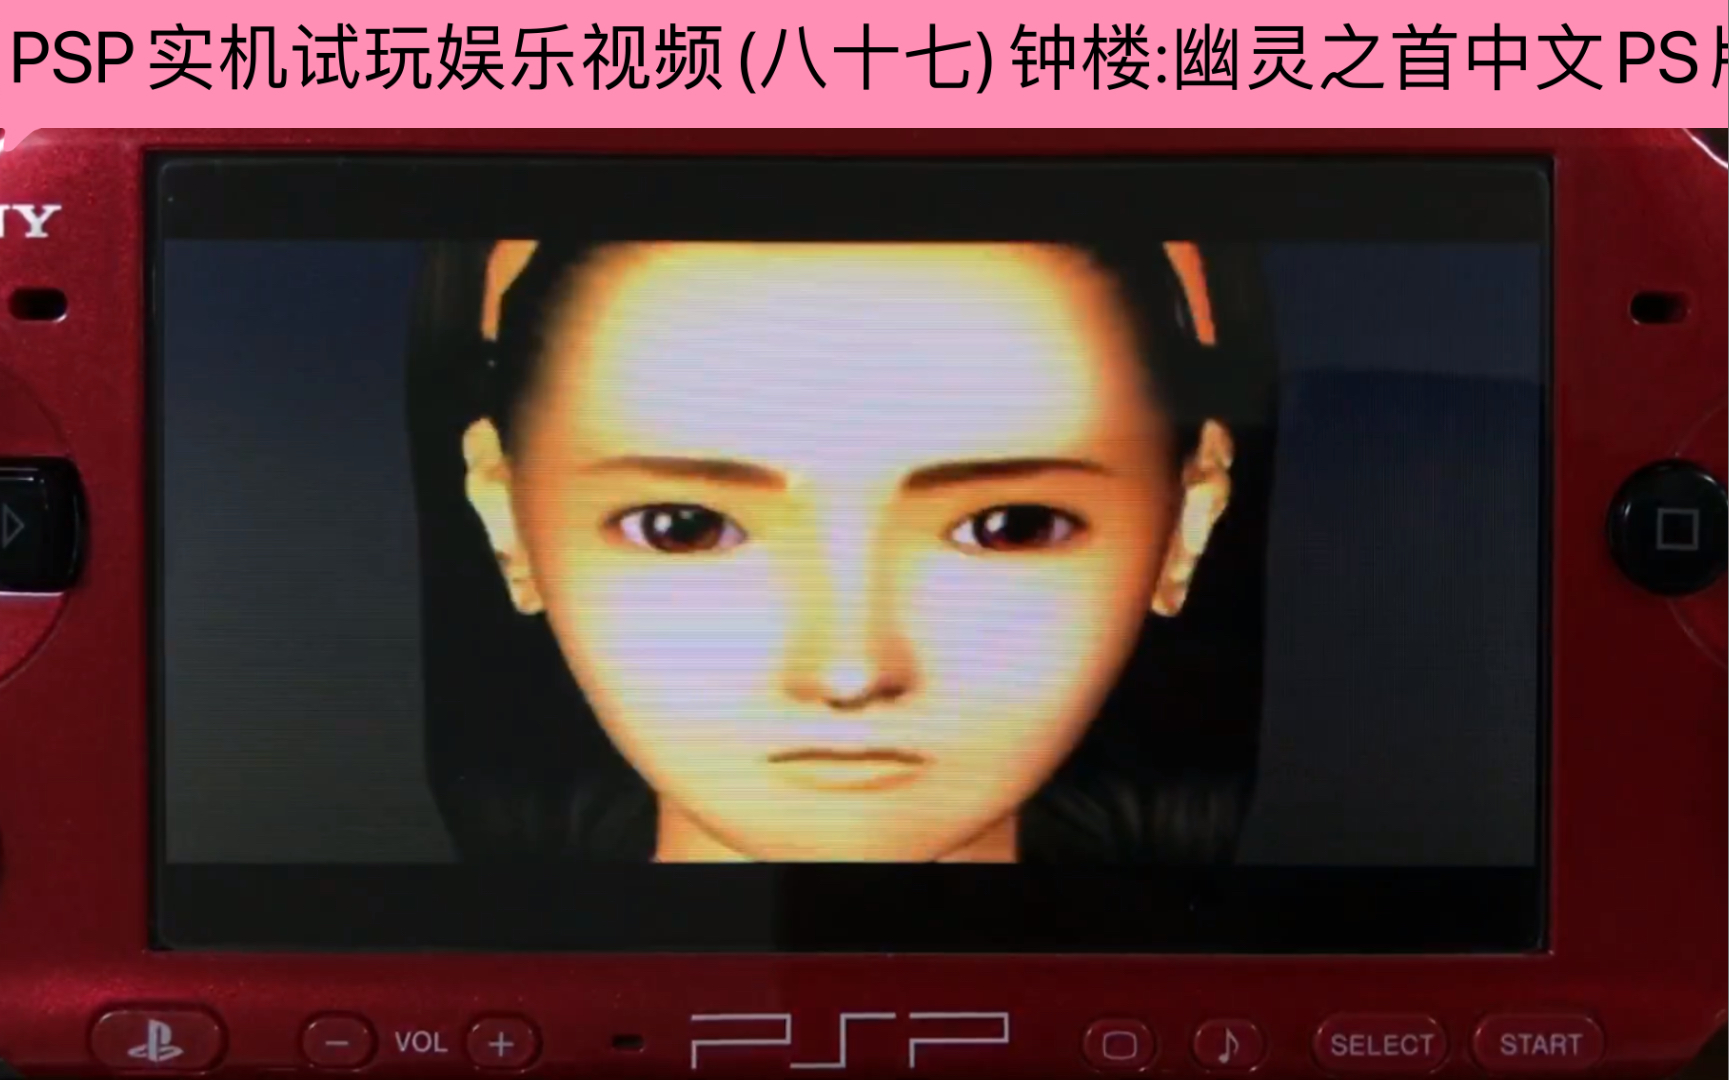 [图]PSP实机试玩娱乐视频(八十七)钟楼:幽灵之首中文PS版